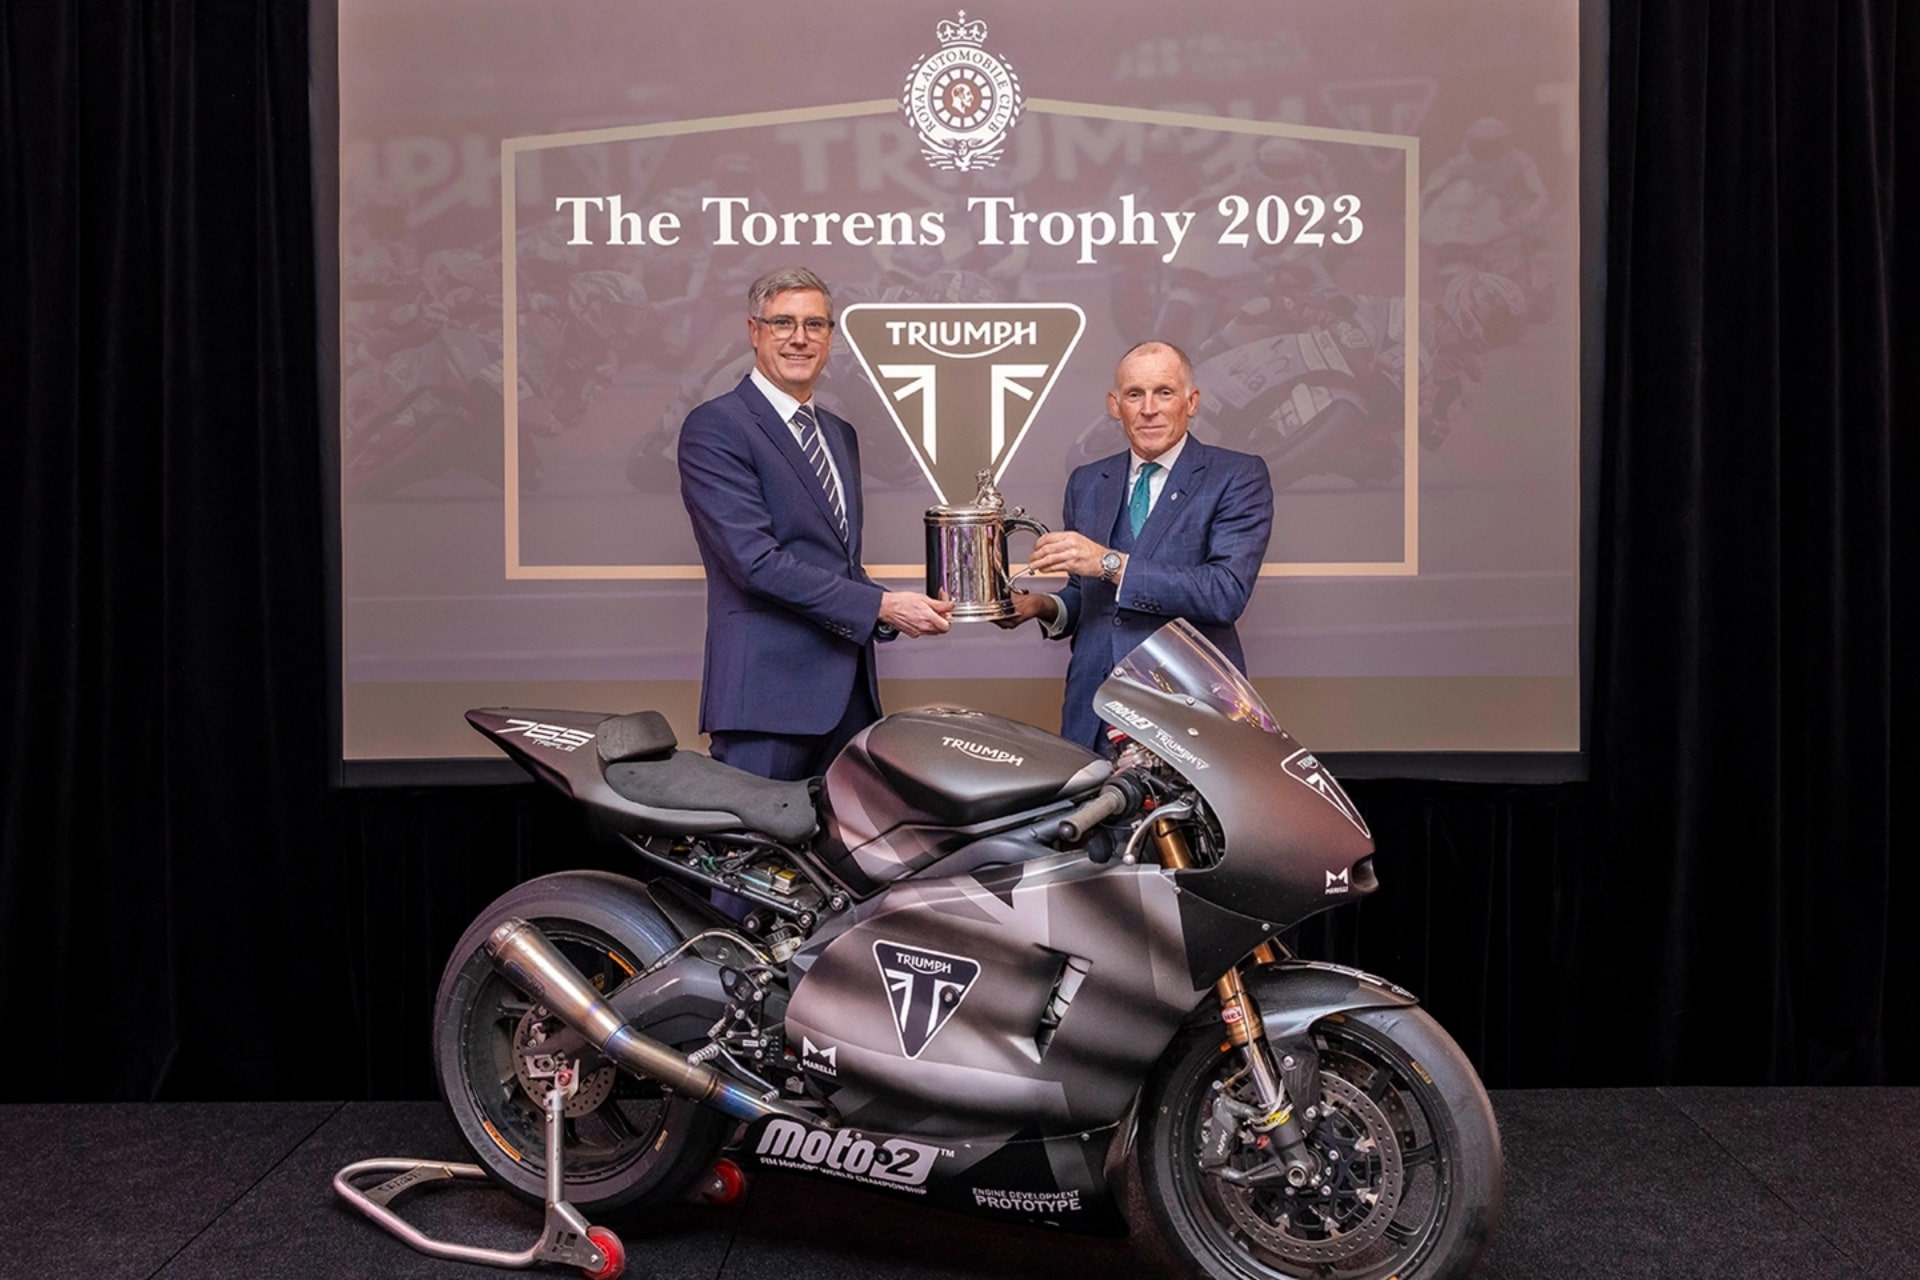 Torrens Trophy 2023